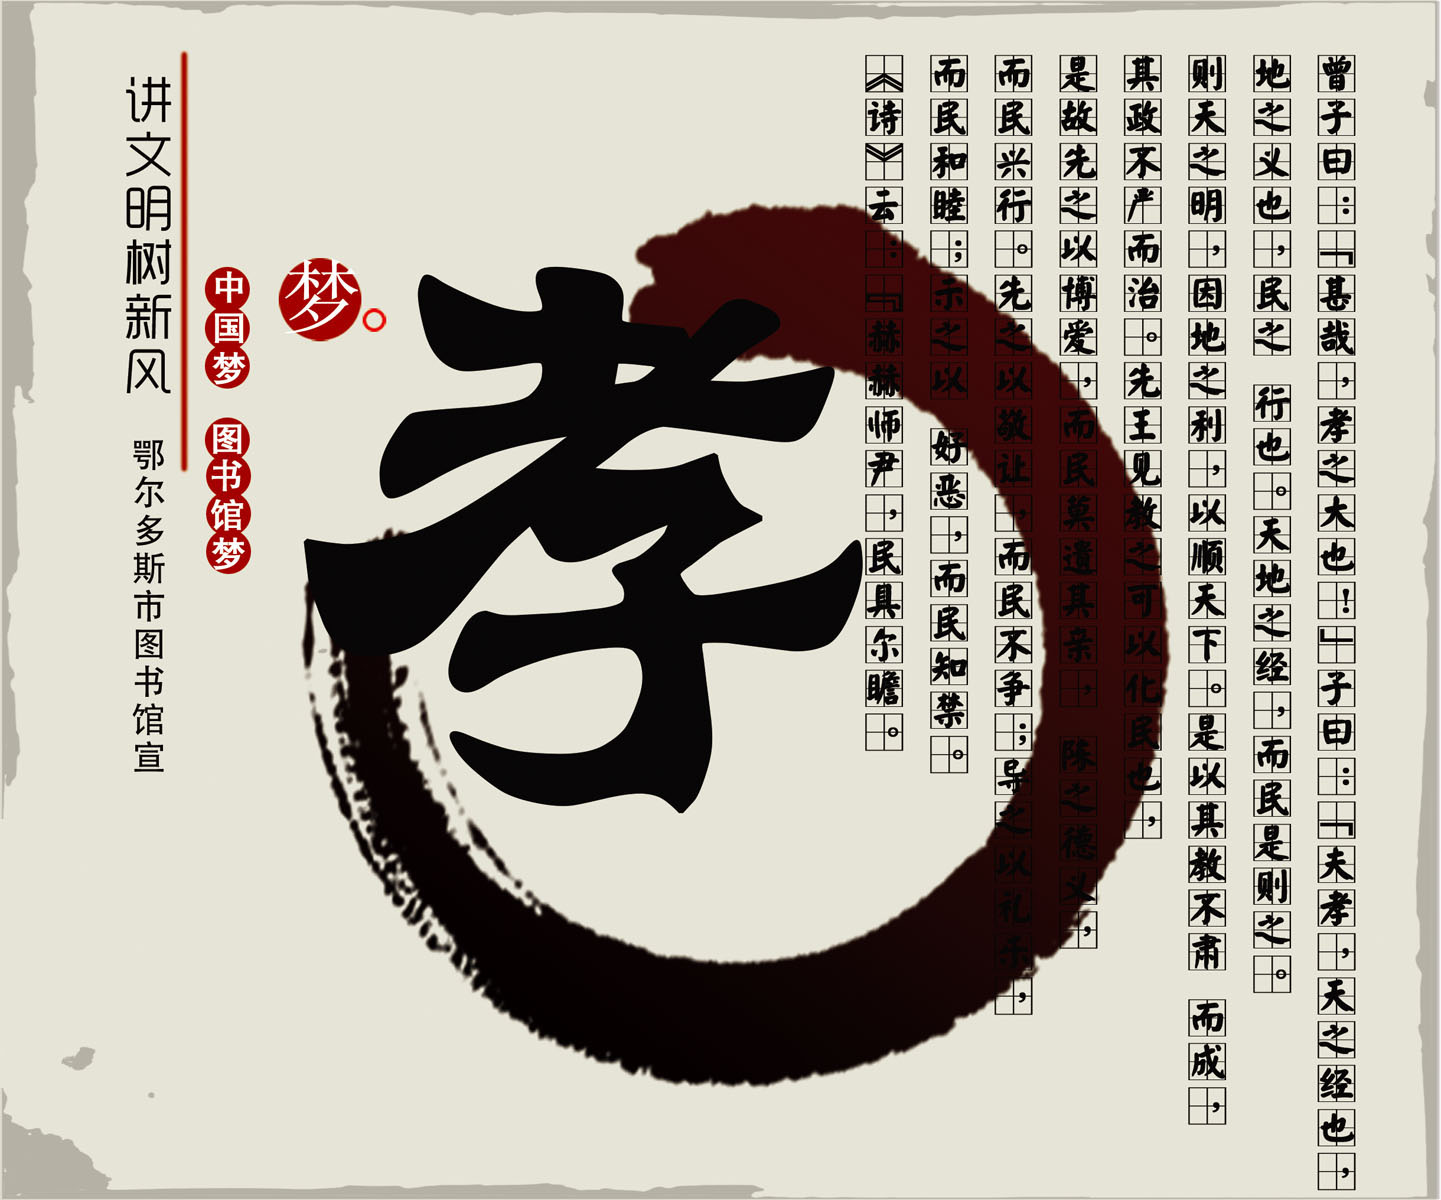 732画布海报展板喷绘素材贴纸616中华传统美德教育文化宣传孝